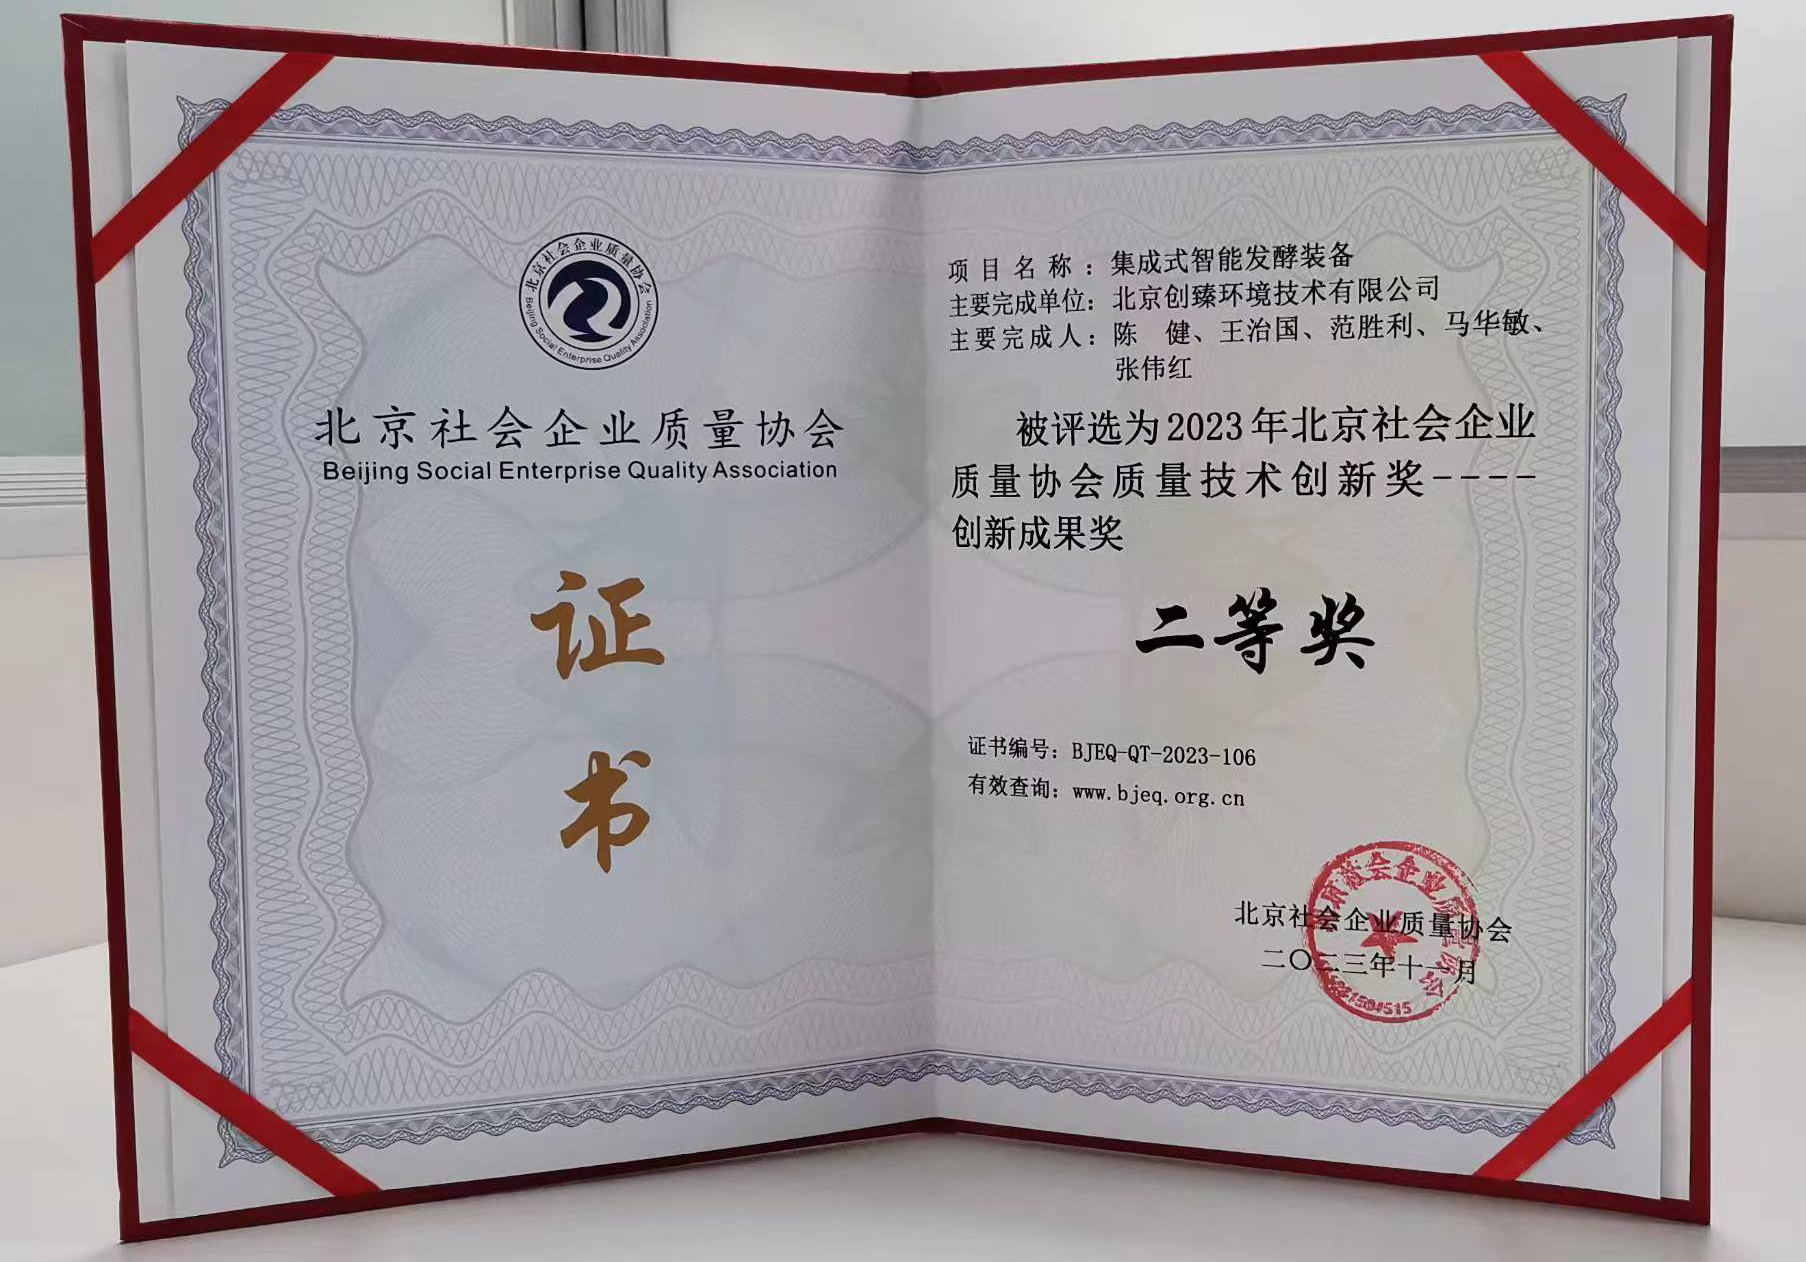 荣誉丨集成式智能发酵装备获北京市质量技术创新成果二等奖